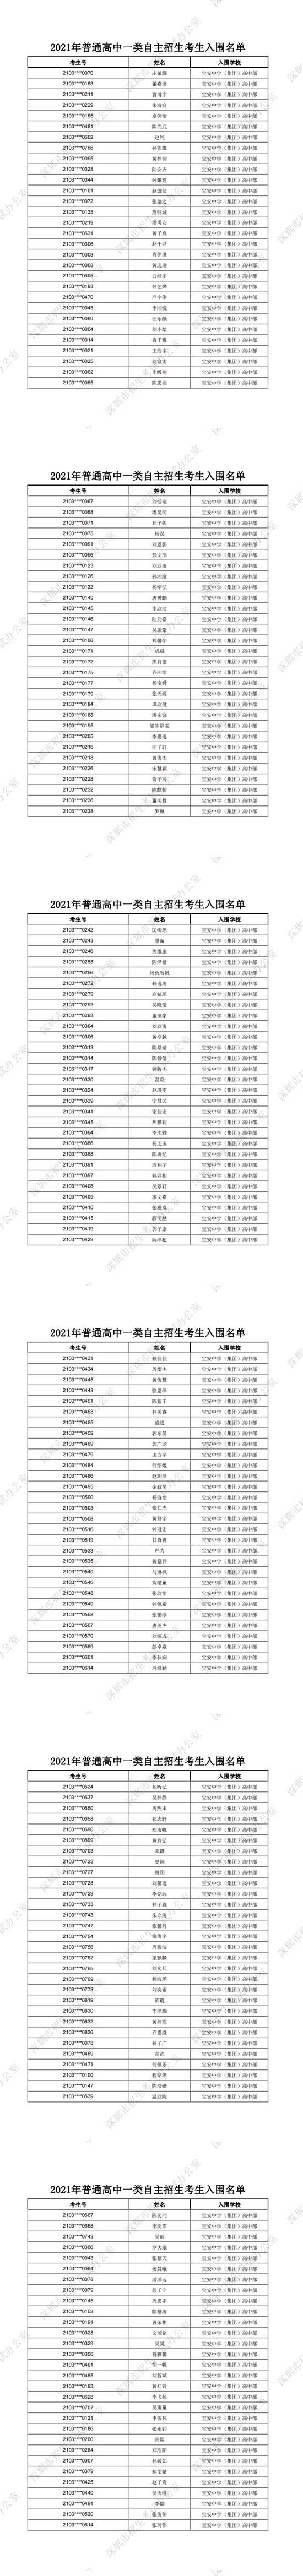 深圳宝安中学(集团)高中部2021年普通高中一类自主招生考生入围名单一览